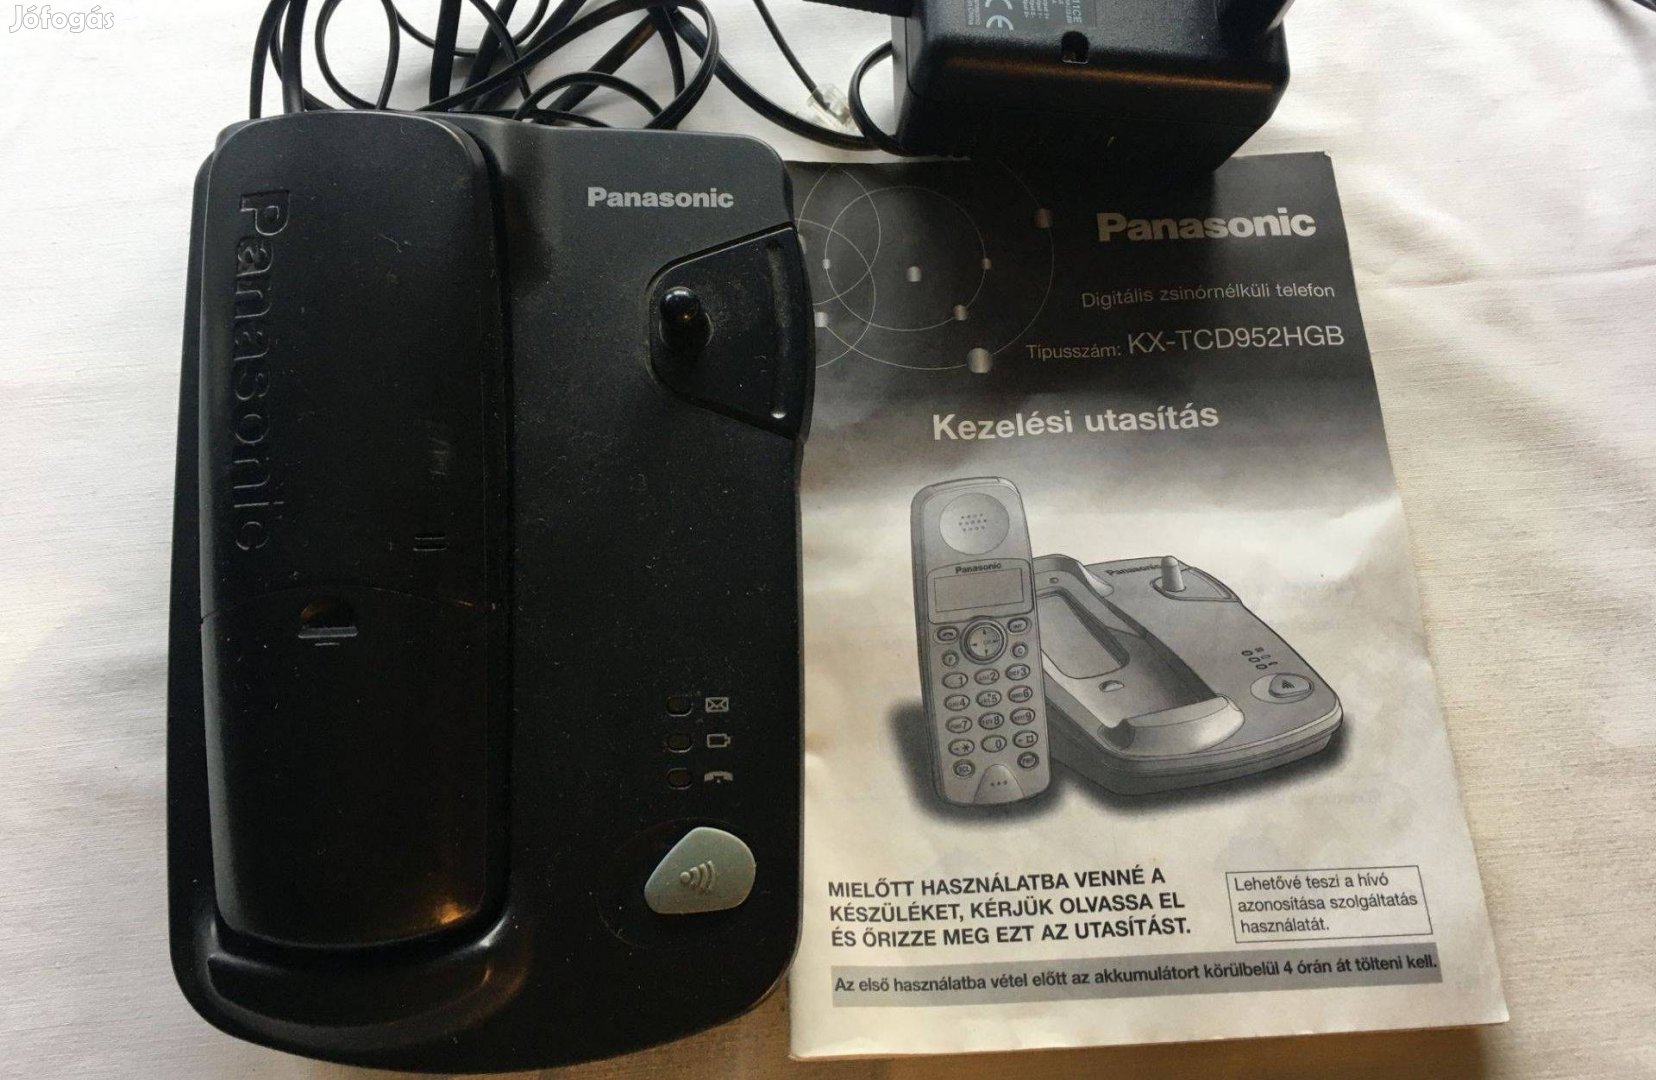 Panasonic vezeték nélküli telefon olcsón